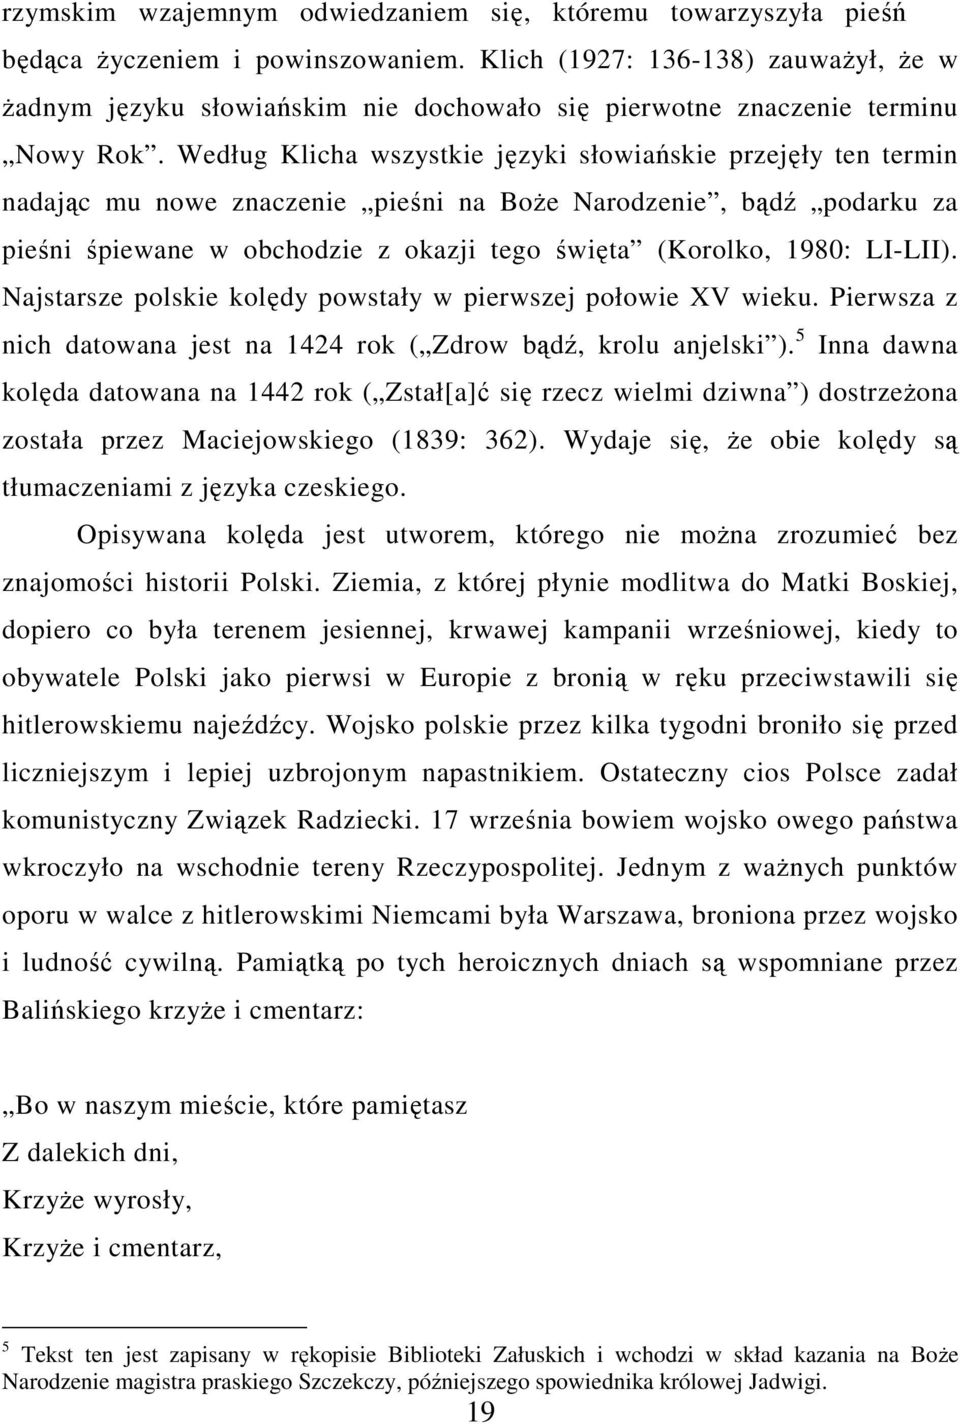 Według Klicha wszystkie języki słowiańskie przejęły ten termin nadając mu nowe znaczenie pieśni na BoŜe Narodzenie, bądź podarku za pieśni śpiewane w obchodzie z okazji tego święta (Korolko, 1980: